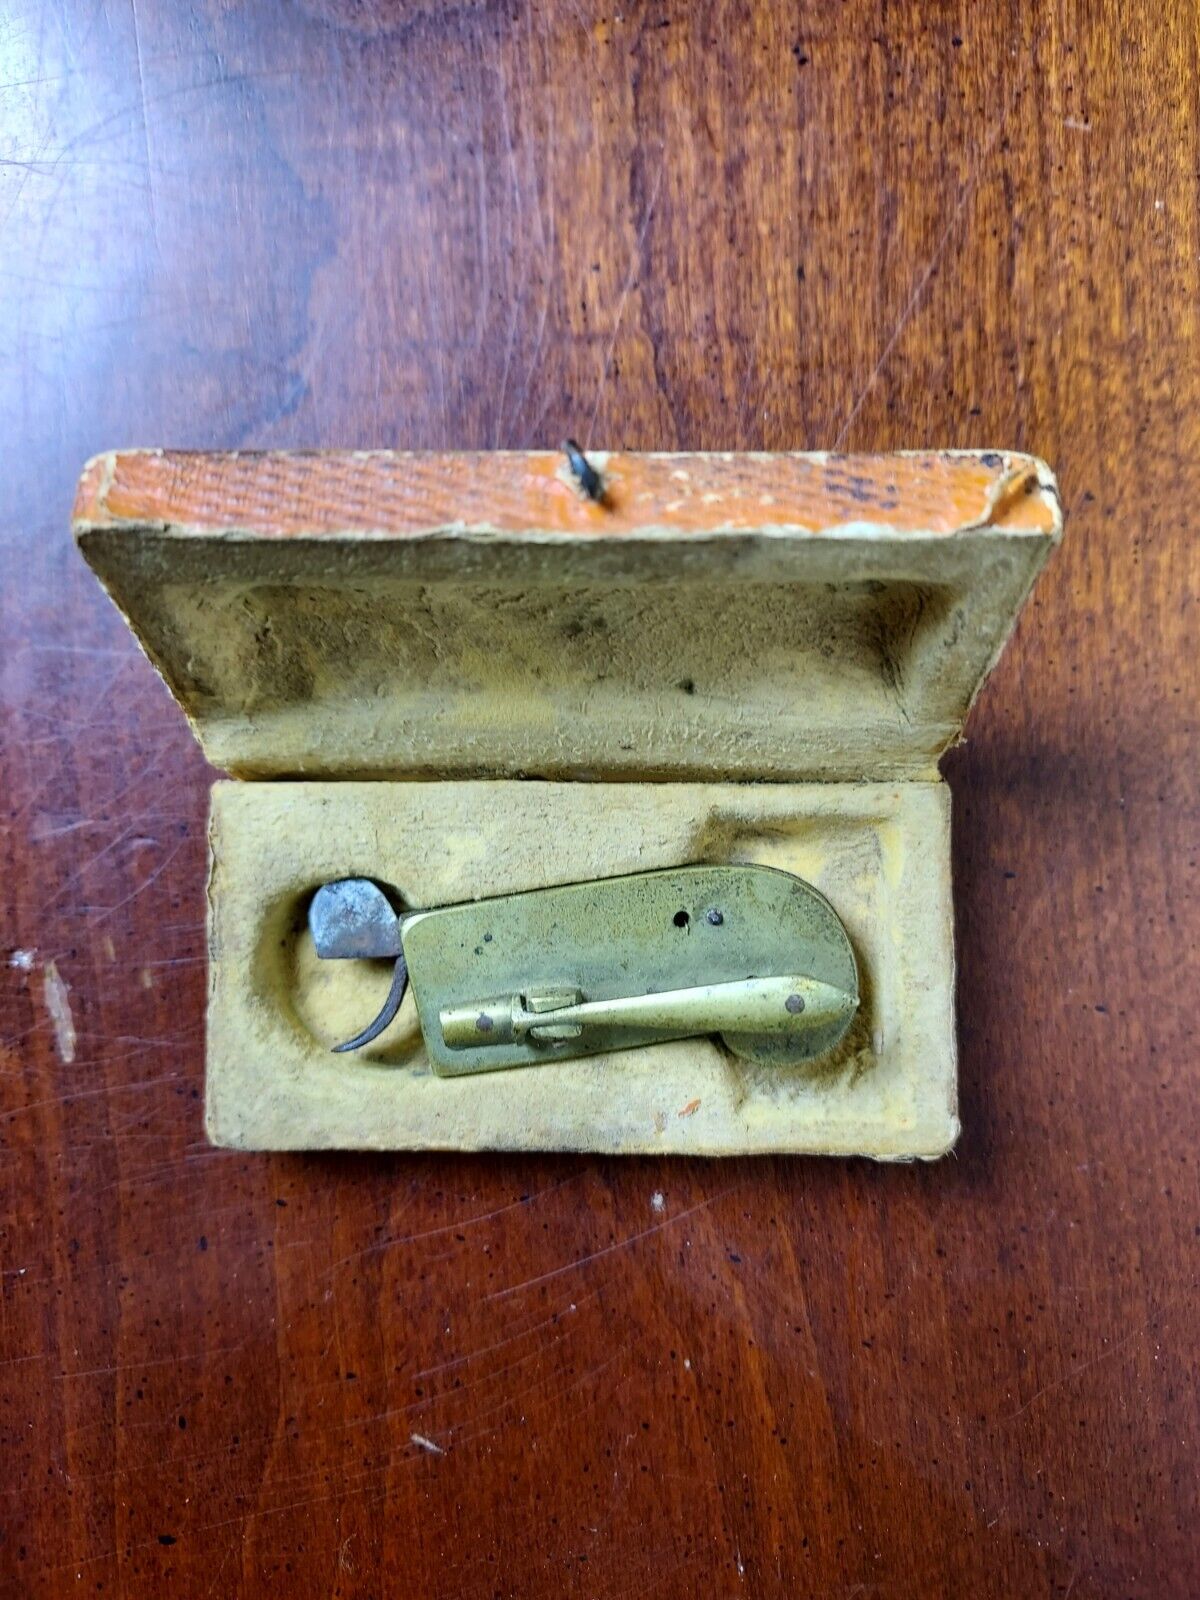 Antique Civil War Era Fleam Bleeder Medical Tool In Original Leather Case